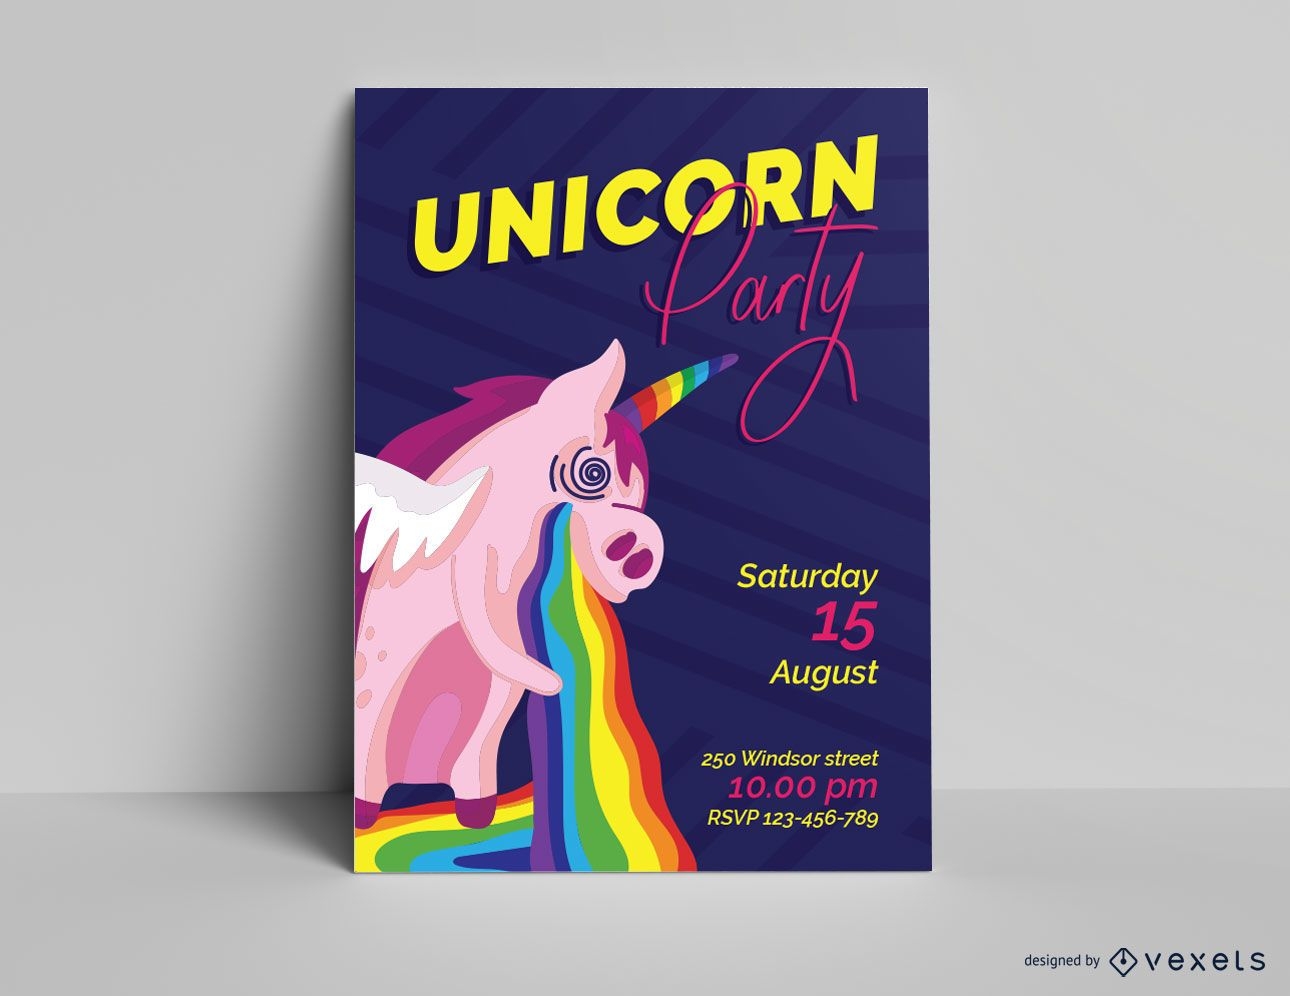 Unicorn party invitation template